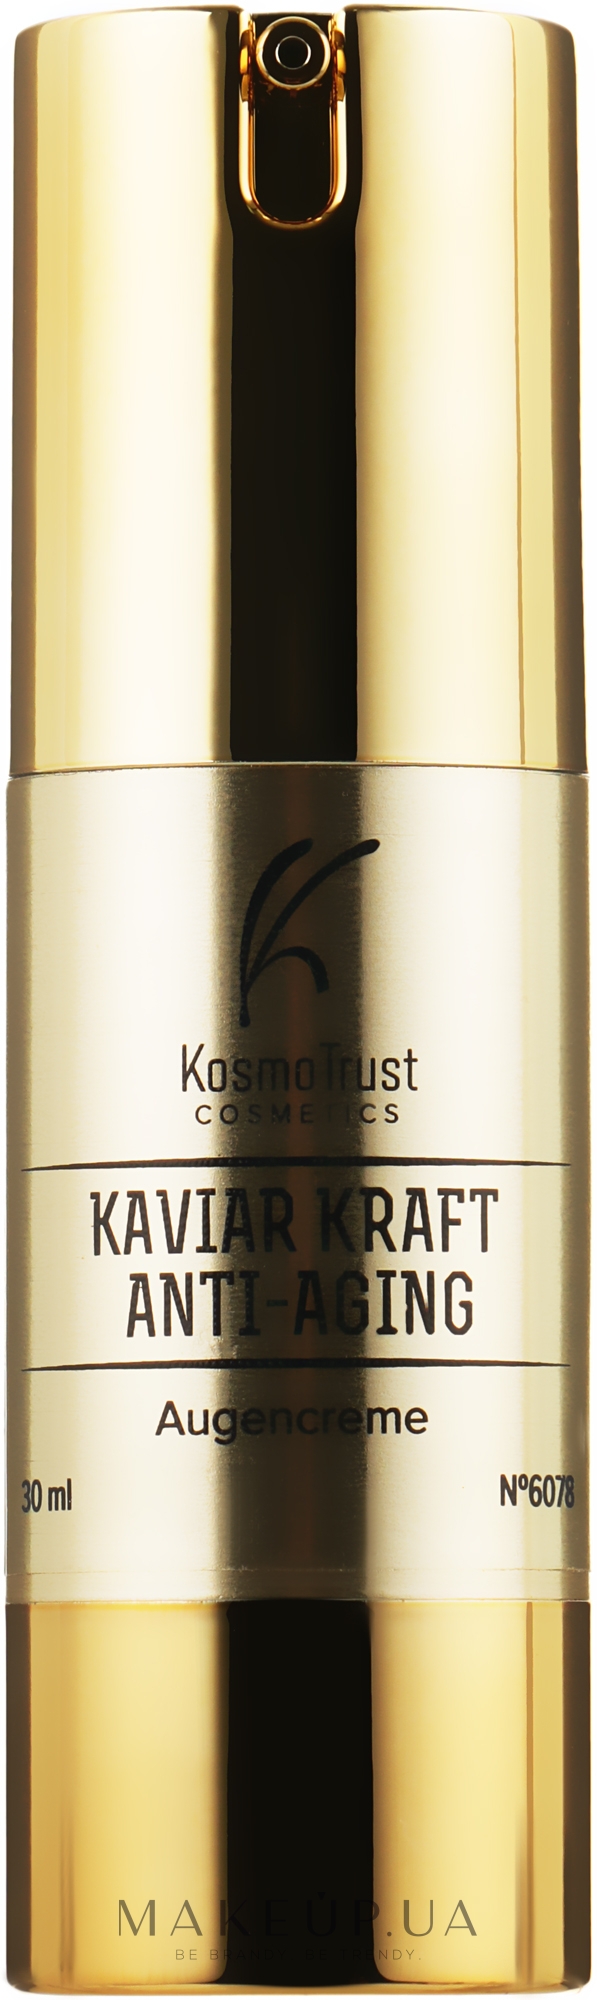 Крем для век с экстрактом черной икры и золотом - KosmoTrust Cosmetics Anti-Aging Kaviar Kraft Augencreme — фото 30ml